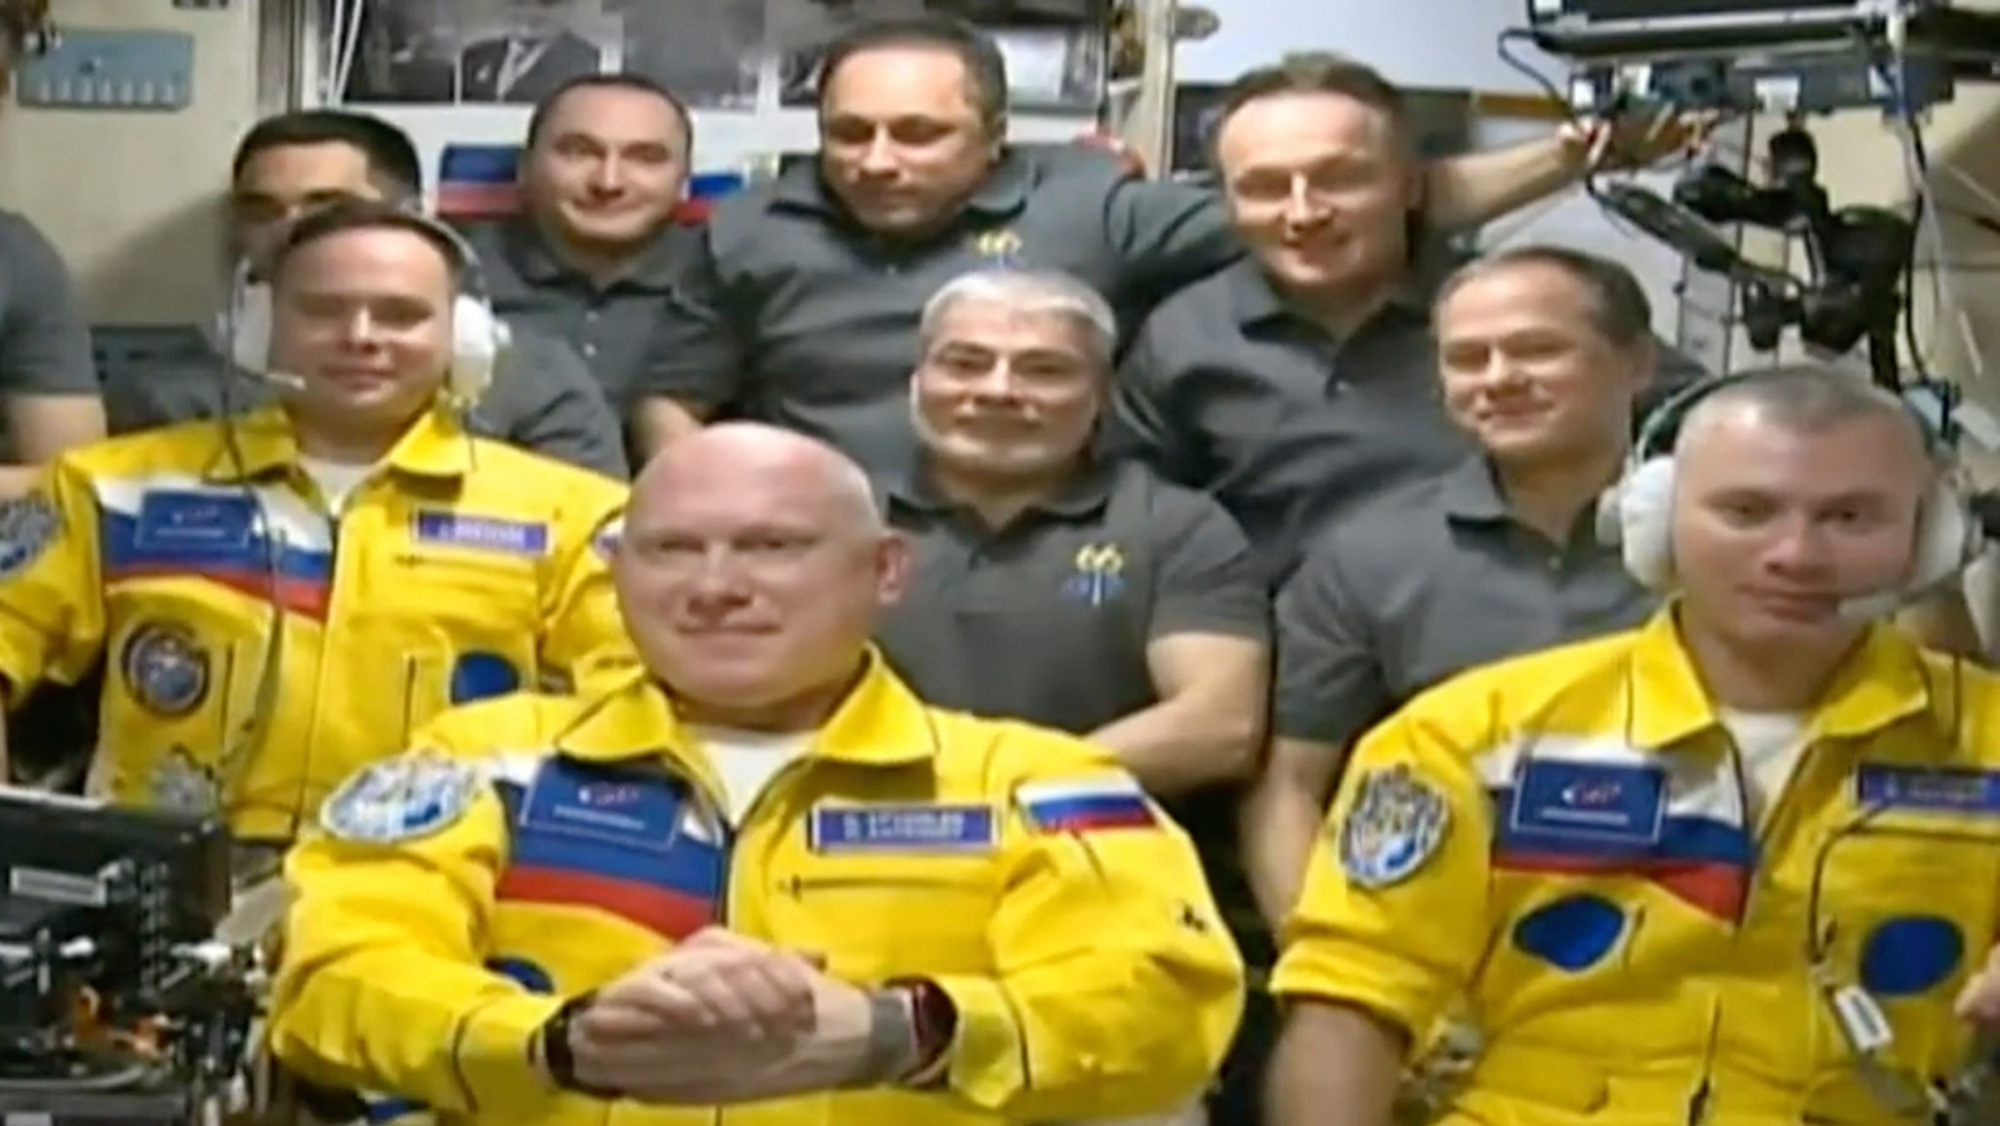 Russia’s description of the color of Russian astronauts